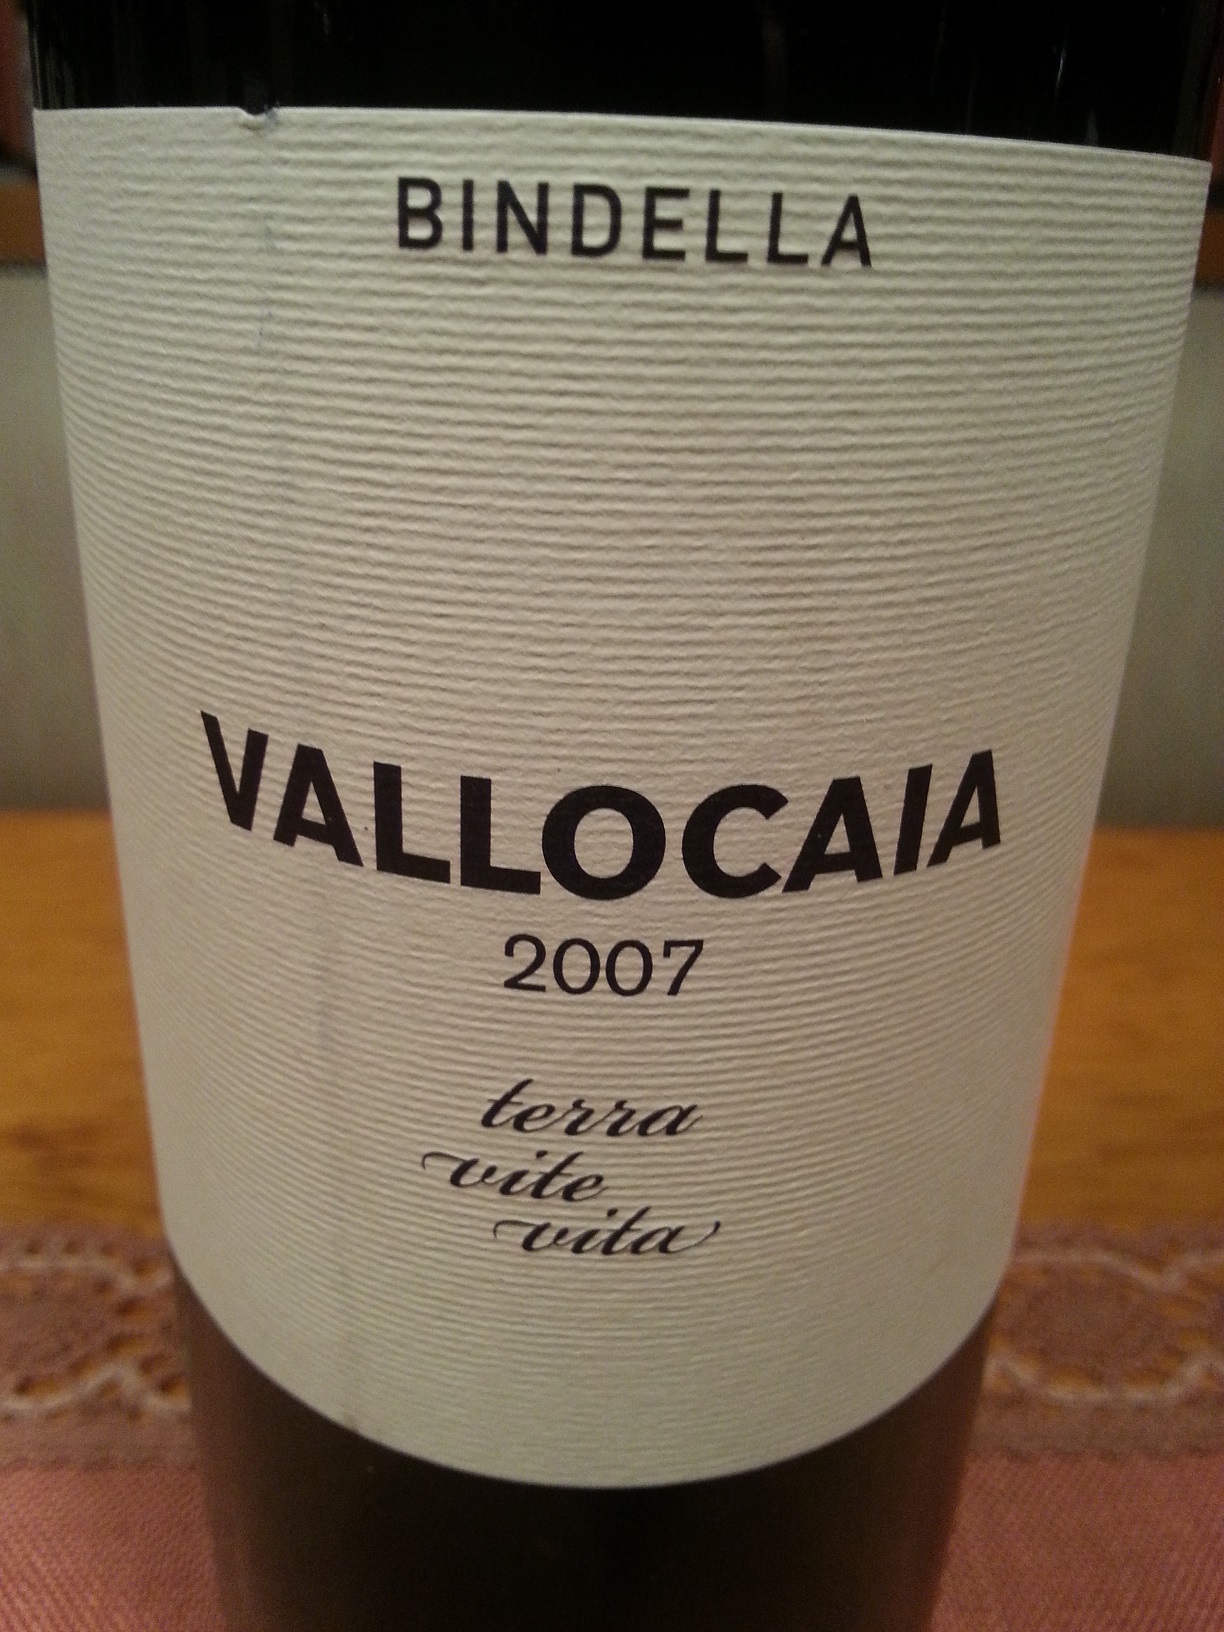 2007 Vallocaia | Bindella